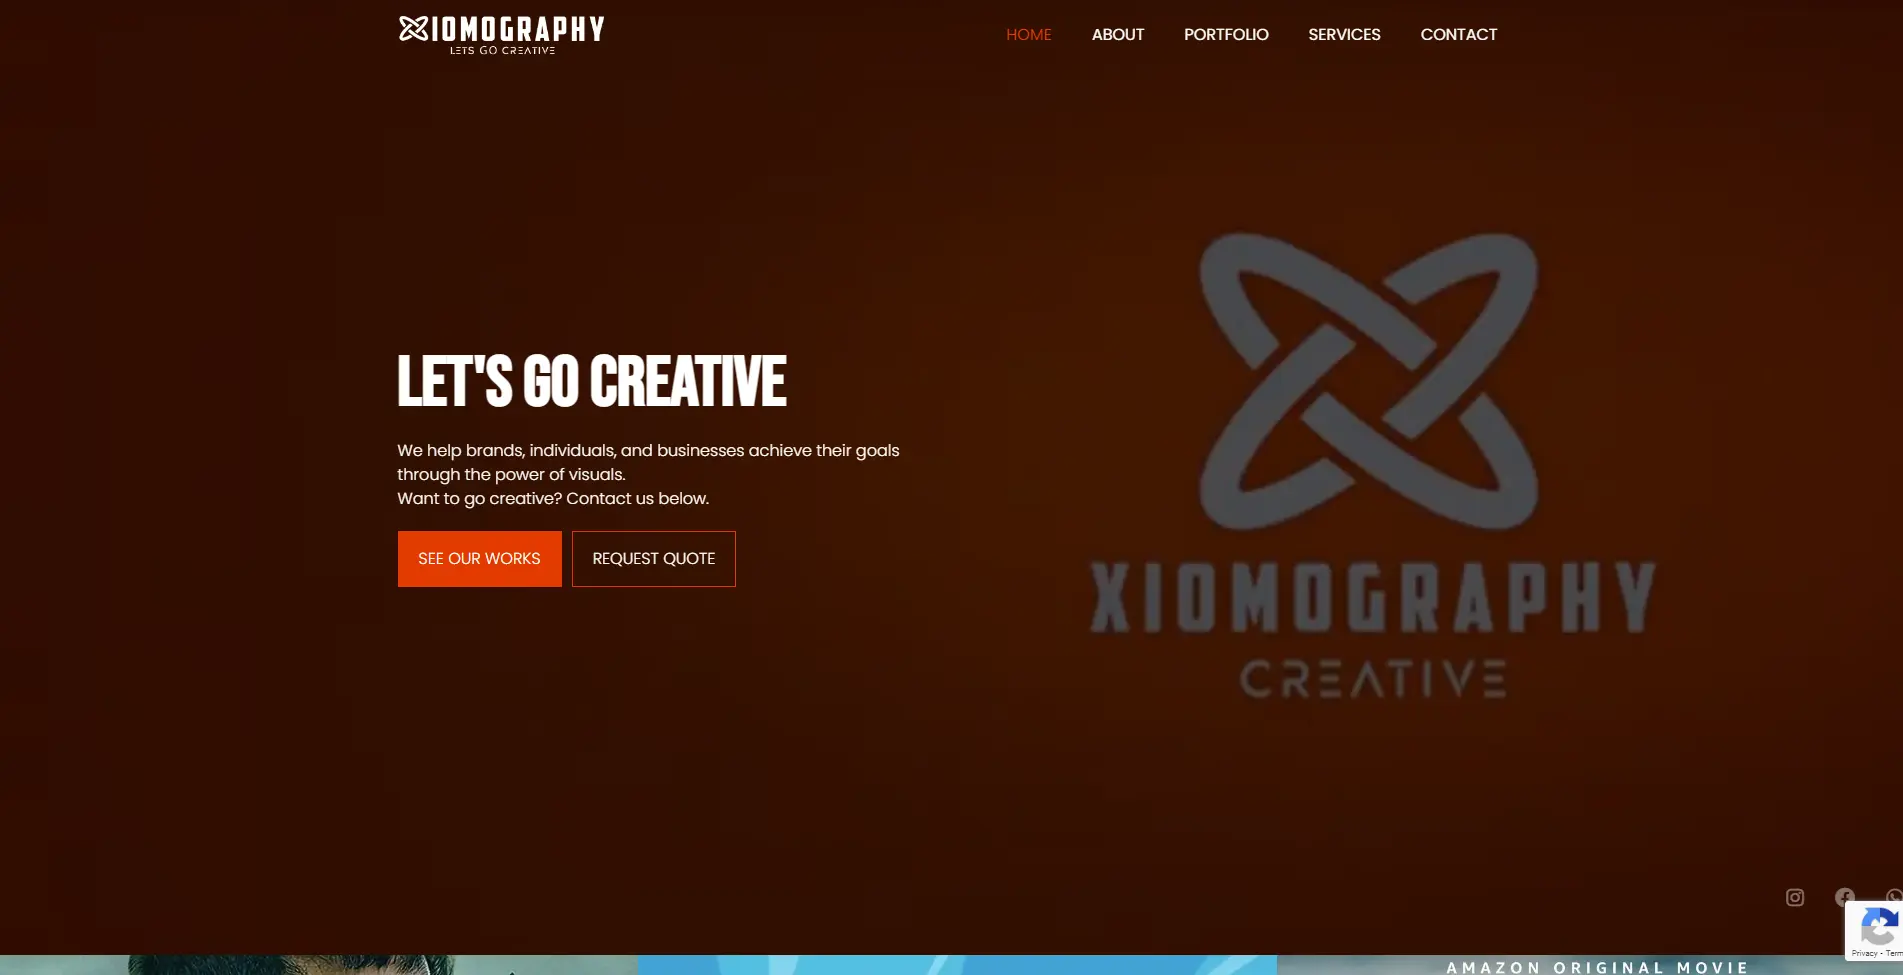 Xiomography Creative